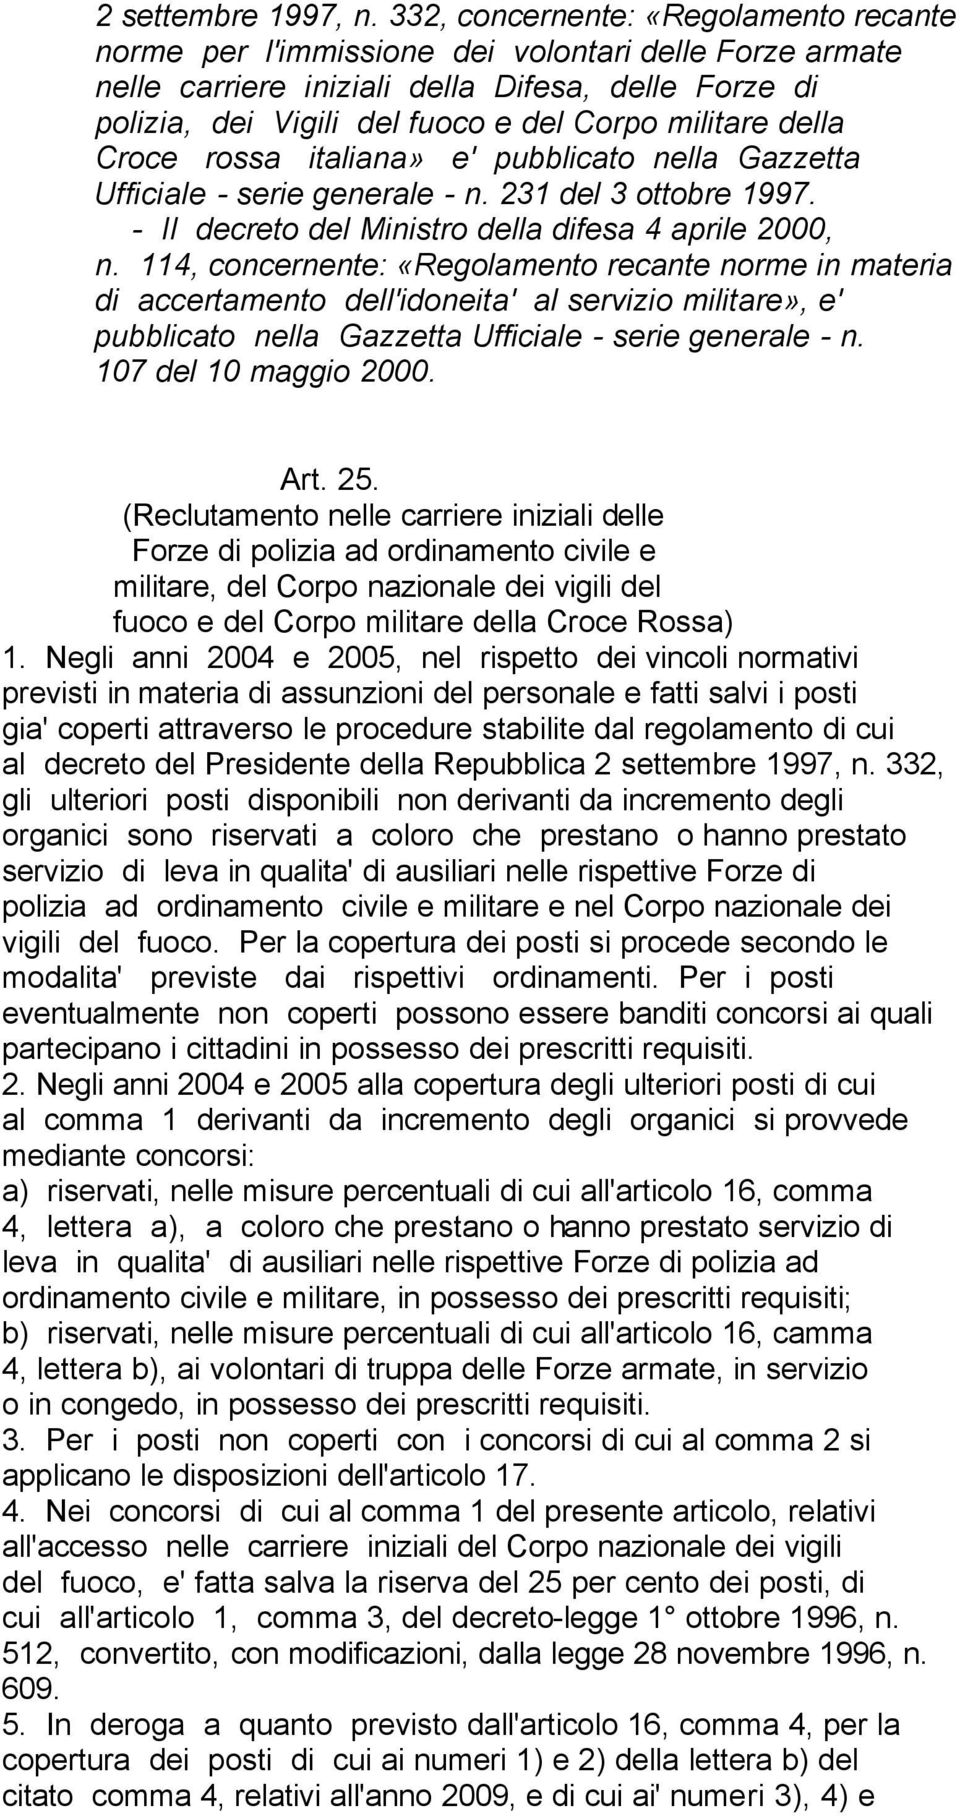 della Croce rossa italiana» e' pubblicato nella Gazzetta Ufficiale - serie generale - n. 231 del 3 ottobre 1997. - Il decreto del Ministro della difesa 4 aprile 2000, n.